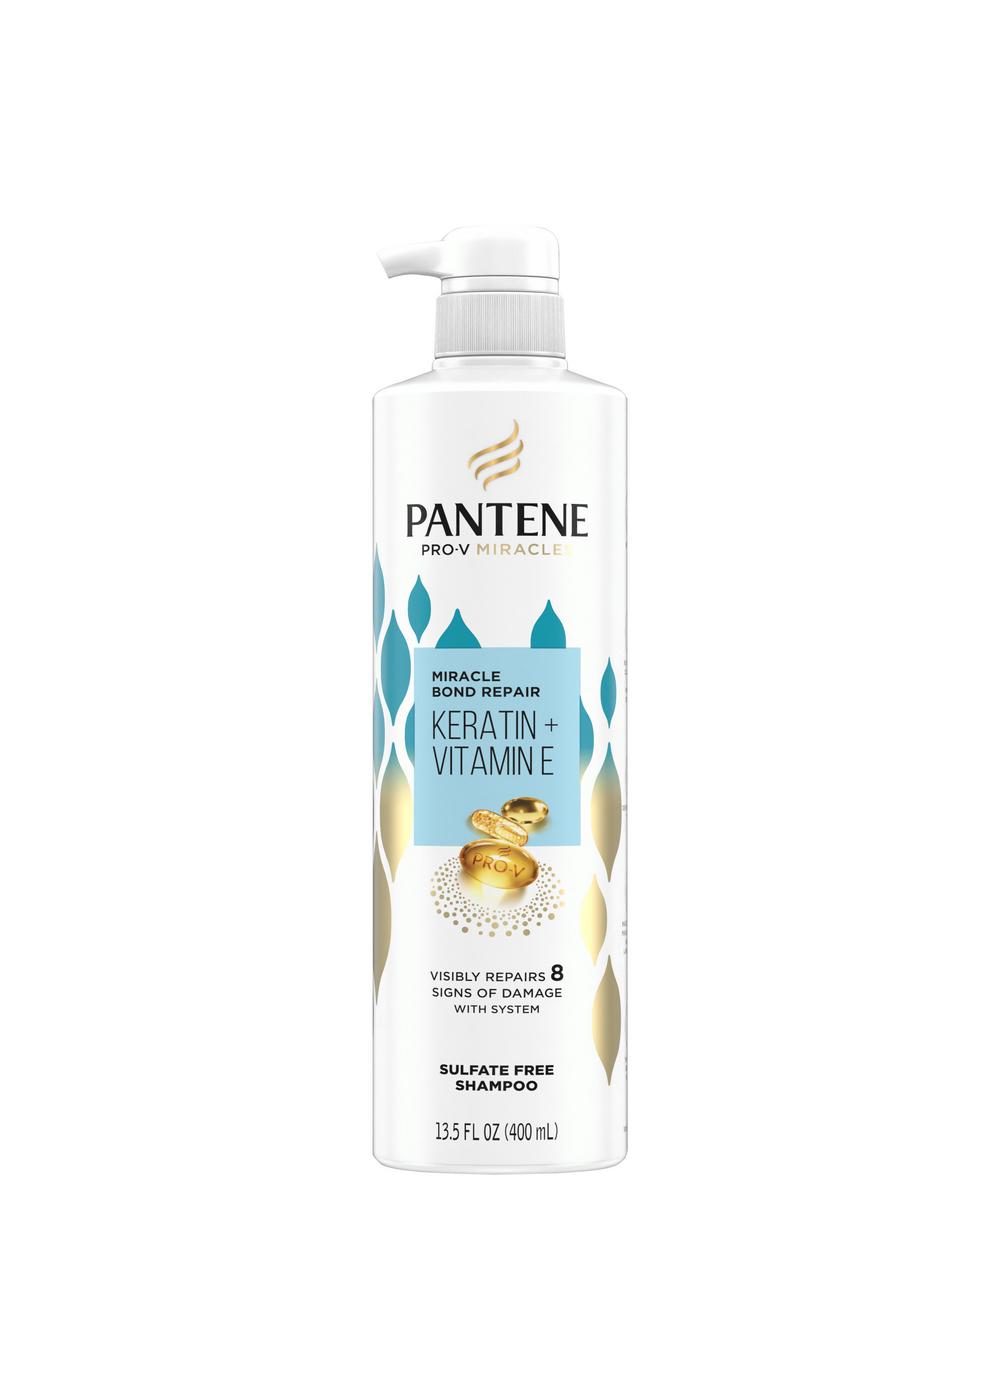 Pantene Miracle Bond Repair Shampoo; image 1 of 2